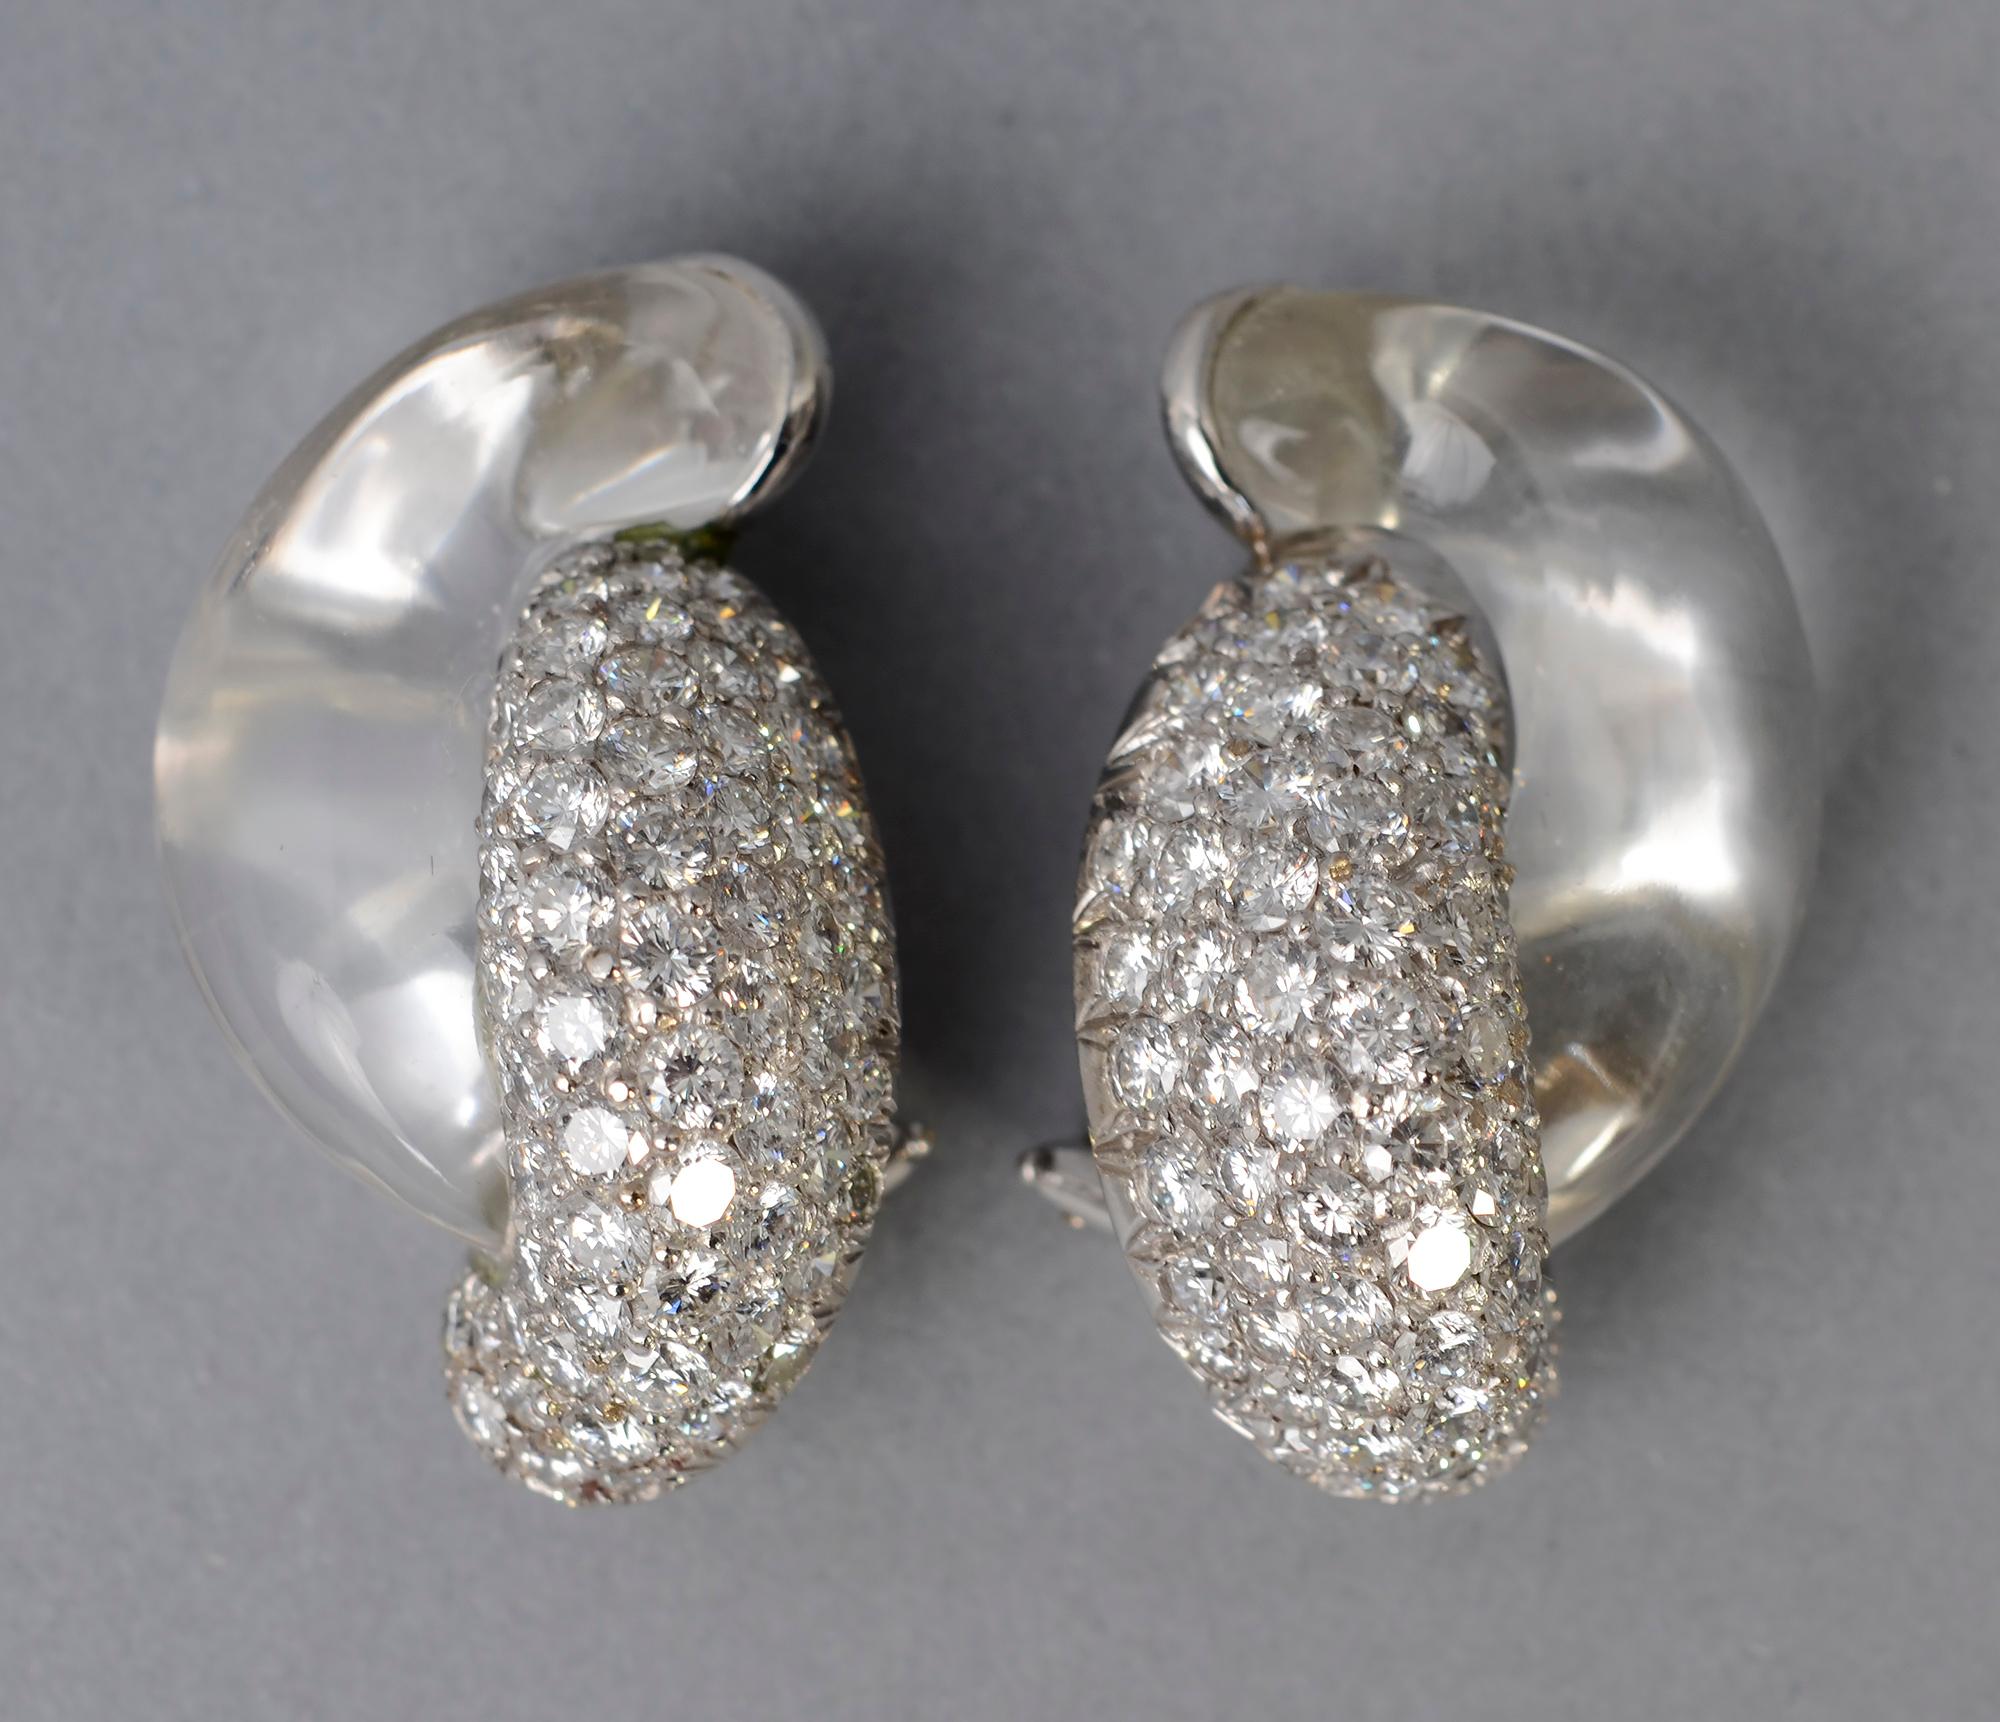 Exquises boucles d'oreilles Seaman Schepps en diamants et cristal de roche. Ils sont sertis dans de l'or blanc 18 carats. Les supports à pince peuvent facilement être transformés en poteaux.
Signés et numérotés. Schepps propose actuellement ces